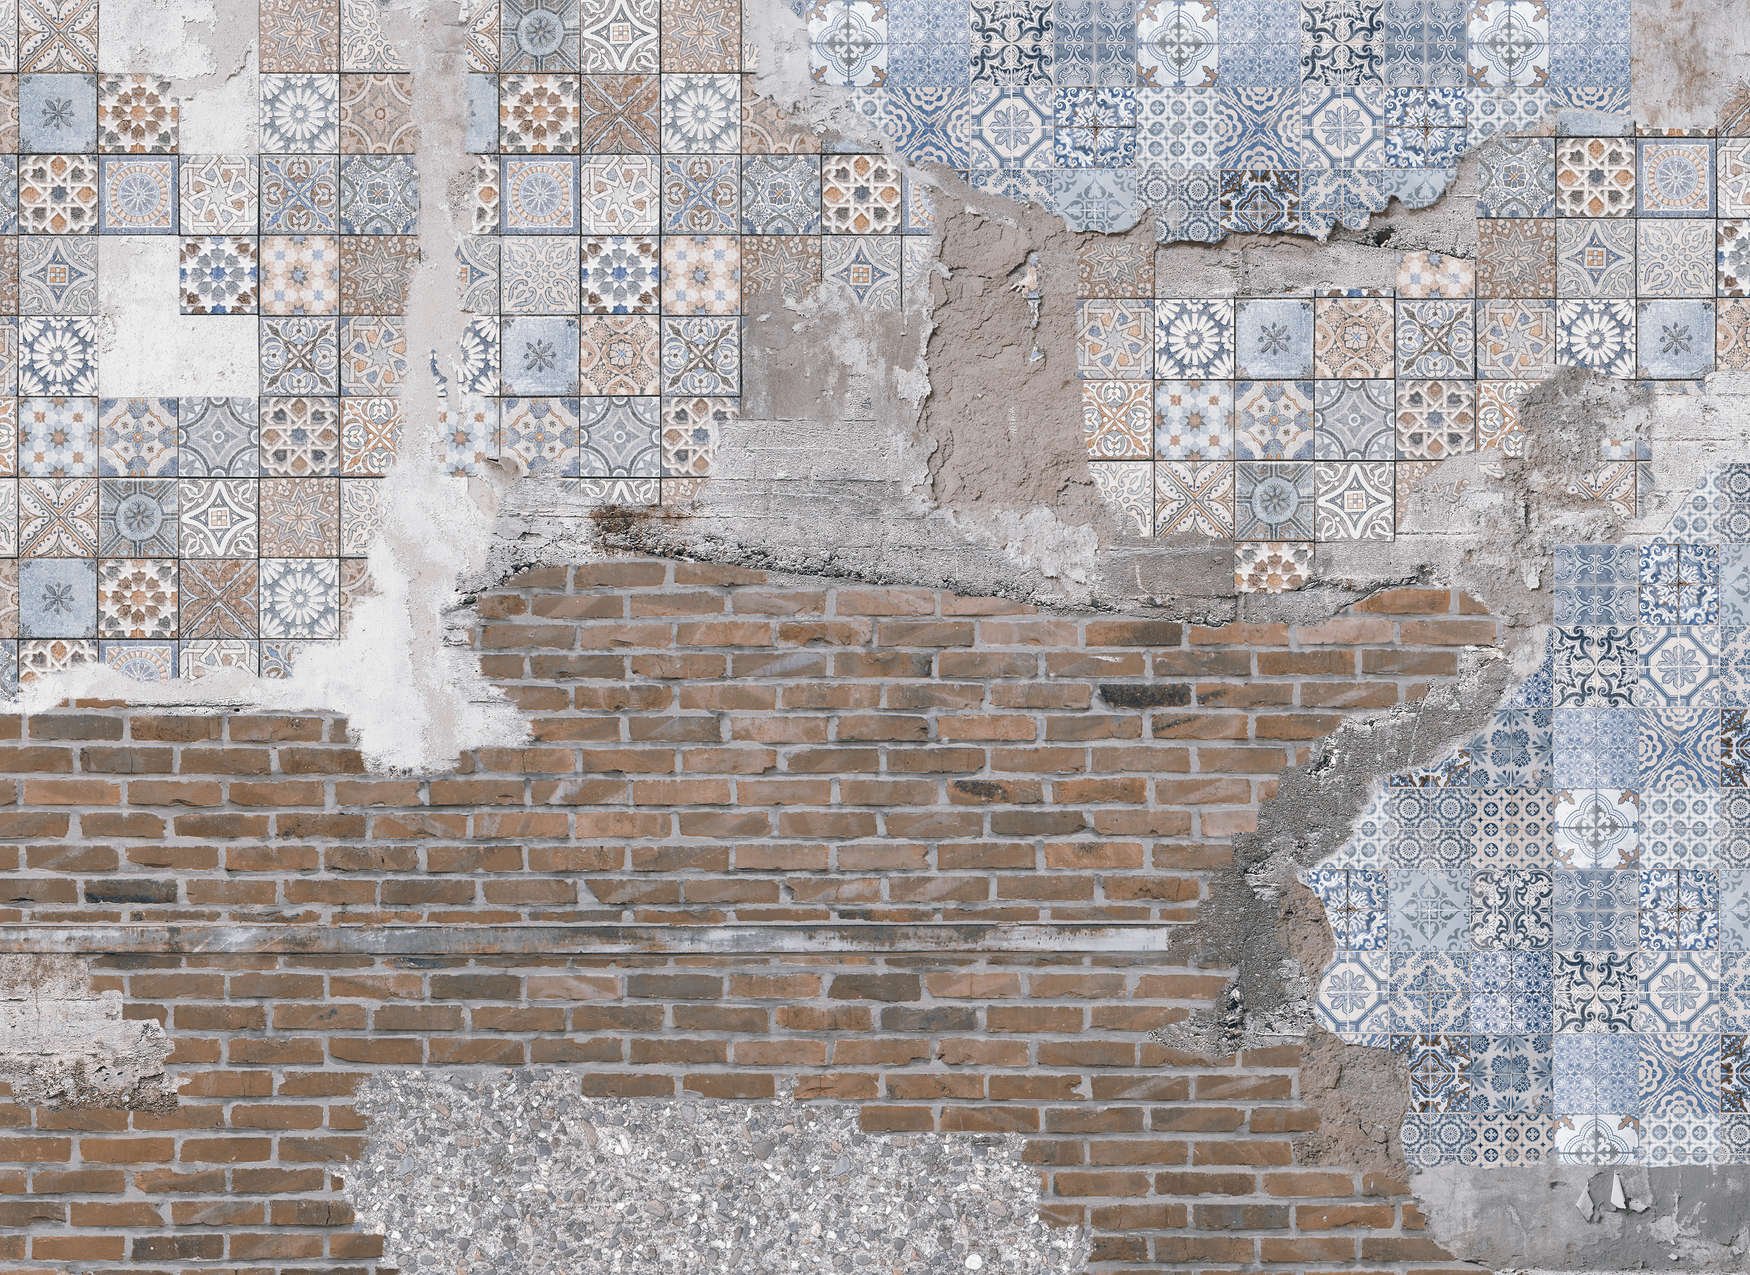             Fototapete Backsteinmauer mit verputzten Mosaiksteinen – Braun, Blau, Grau
        